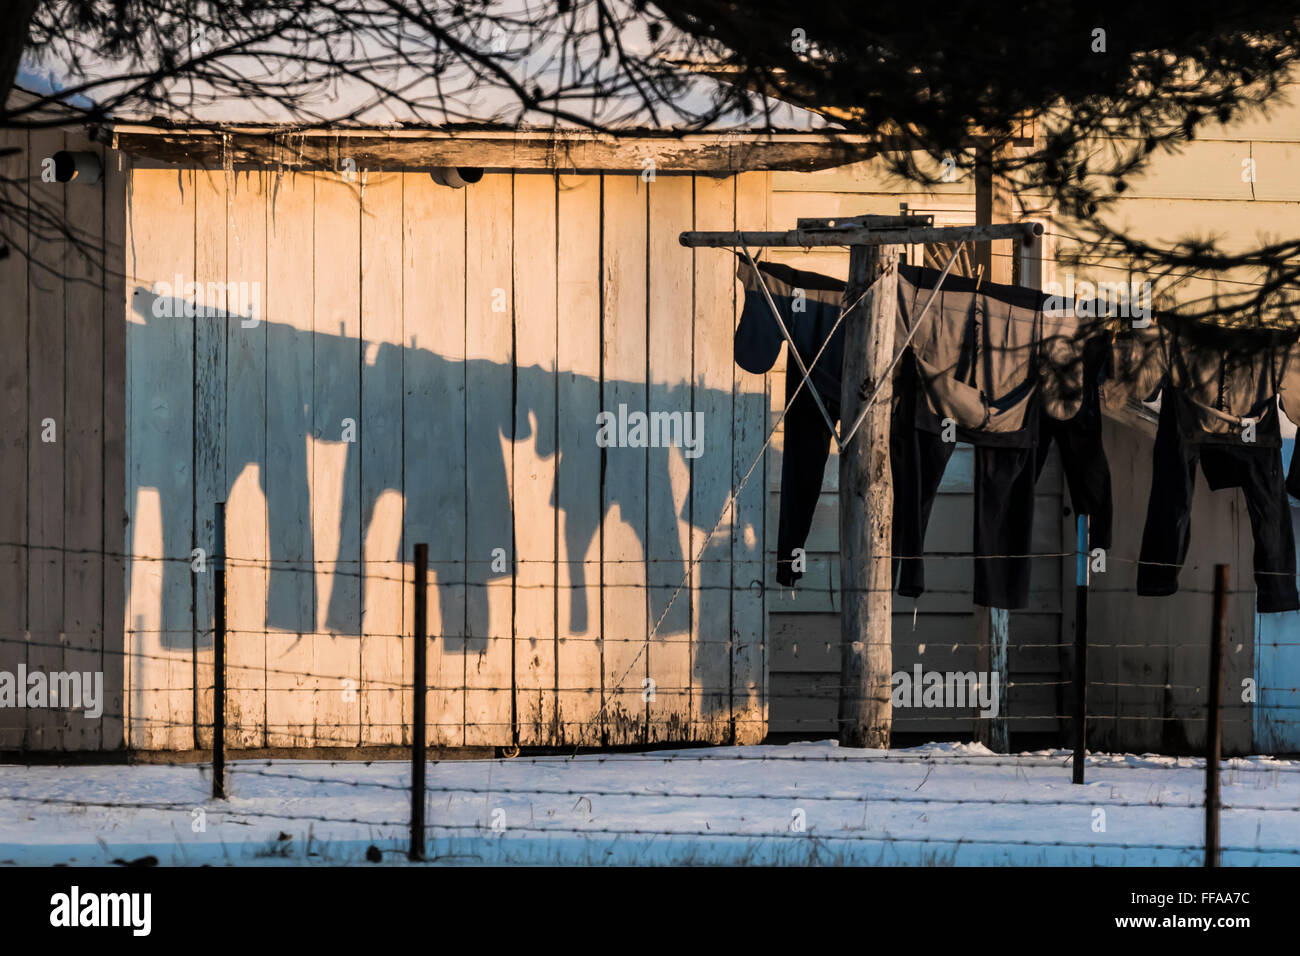 Kleidung trocknen auf eine Linie außerhalb im Winter werfen Schatten auf  der Holz eine Amish House, Michigan, USA Stockfotografie - Alamy